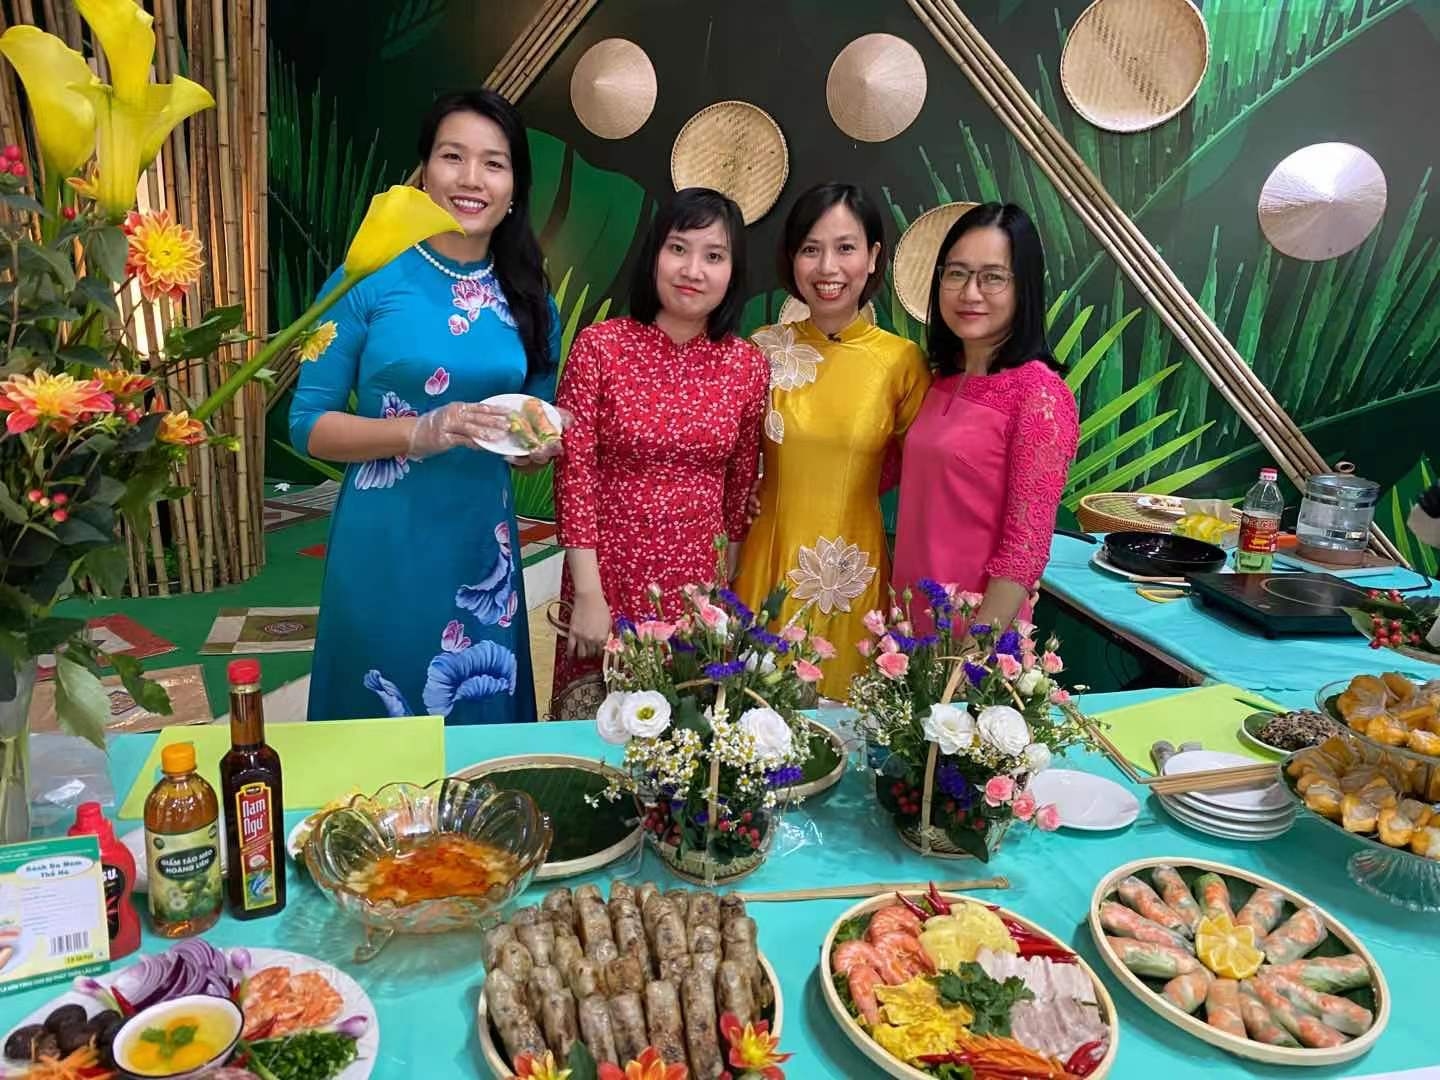 Cán bộ và Phu nhân Tổng Lãnh sự quán Côn Minh tổ chức tham dự buổi truyền hình trực tiếp giới thiệu các món ăn đặc sắc ba miền được du khách trong và ngoài nước ưa thích.